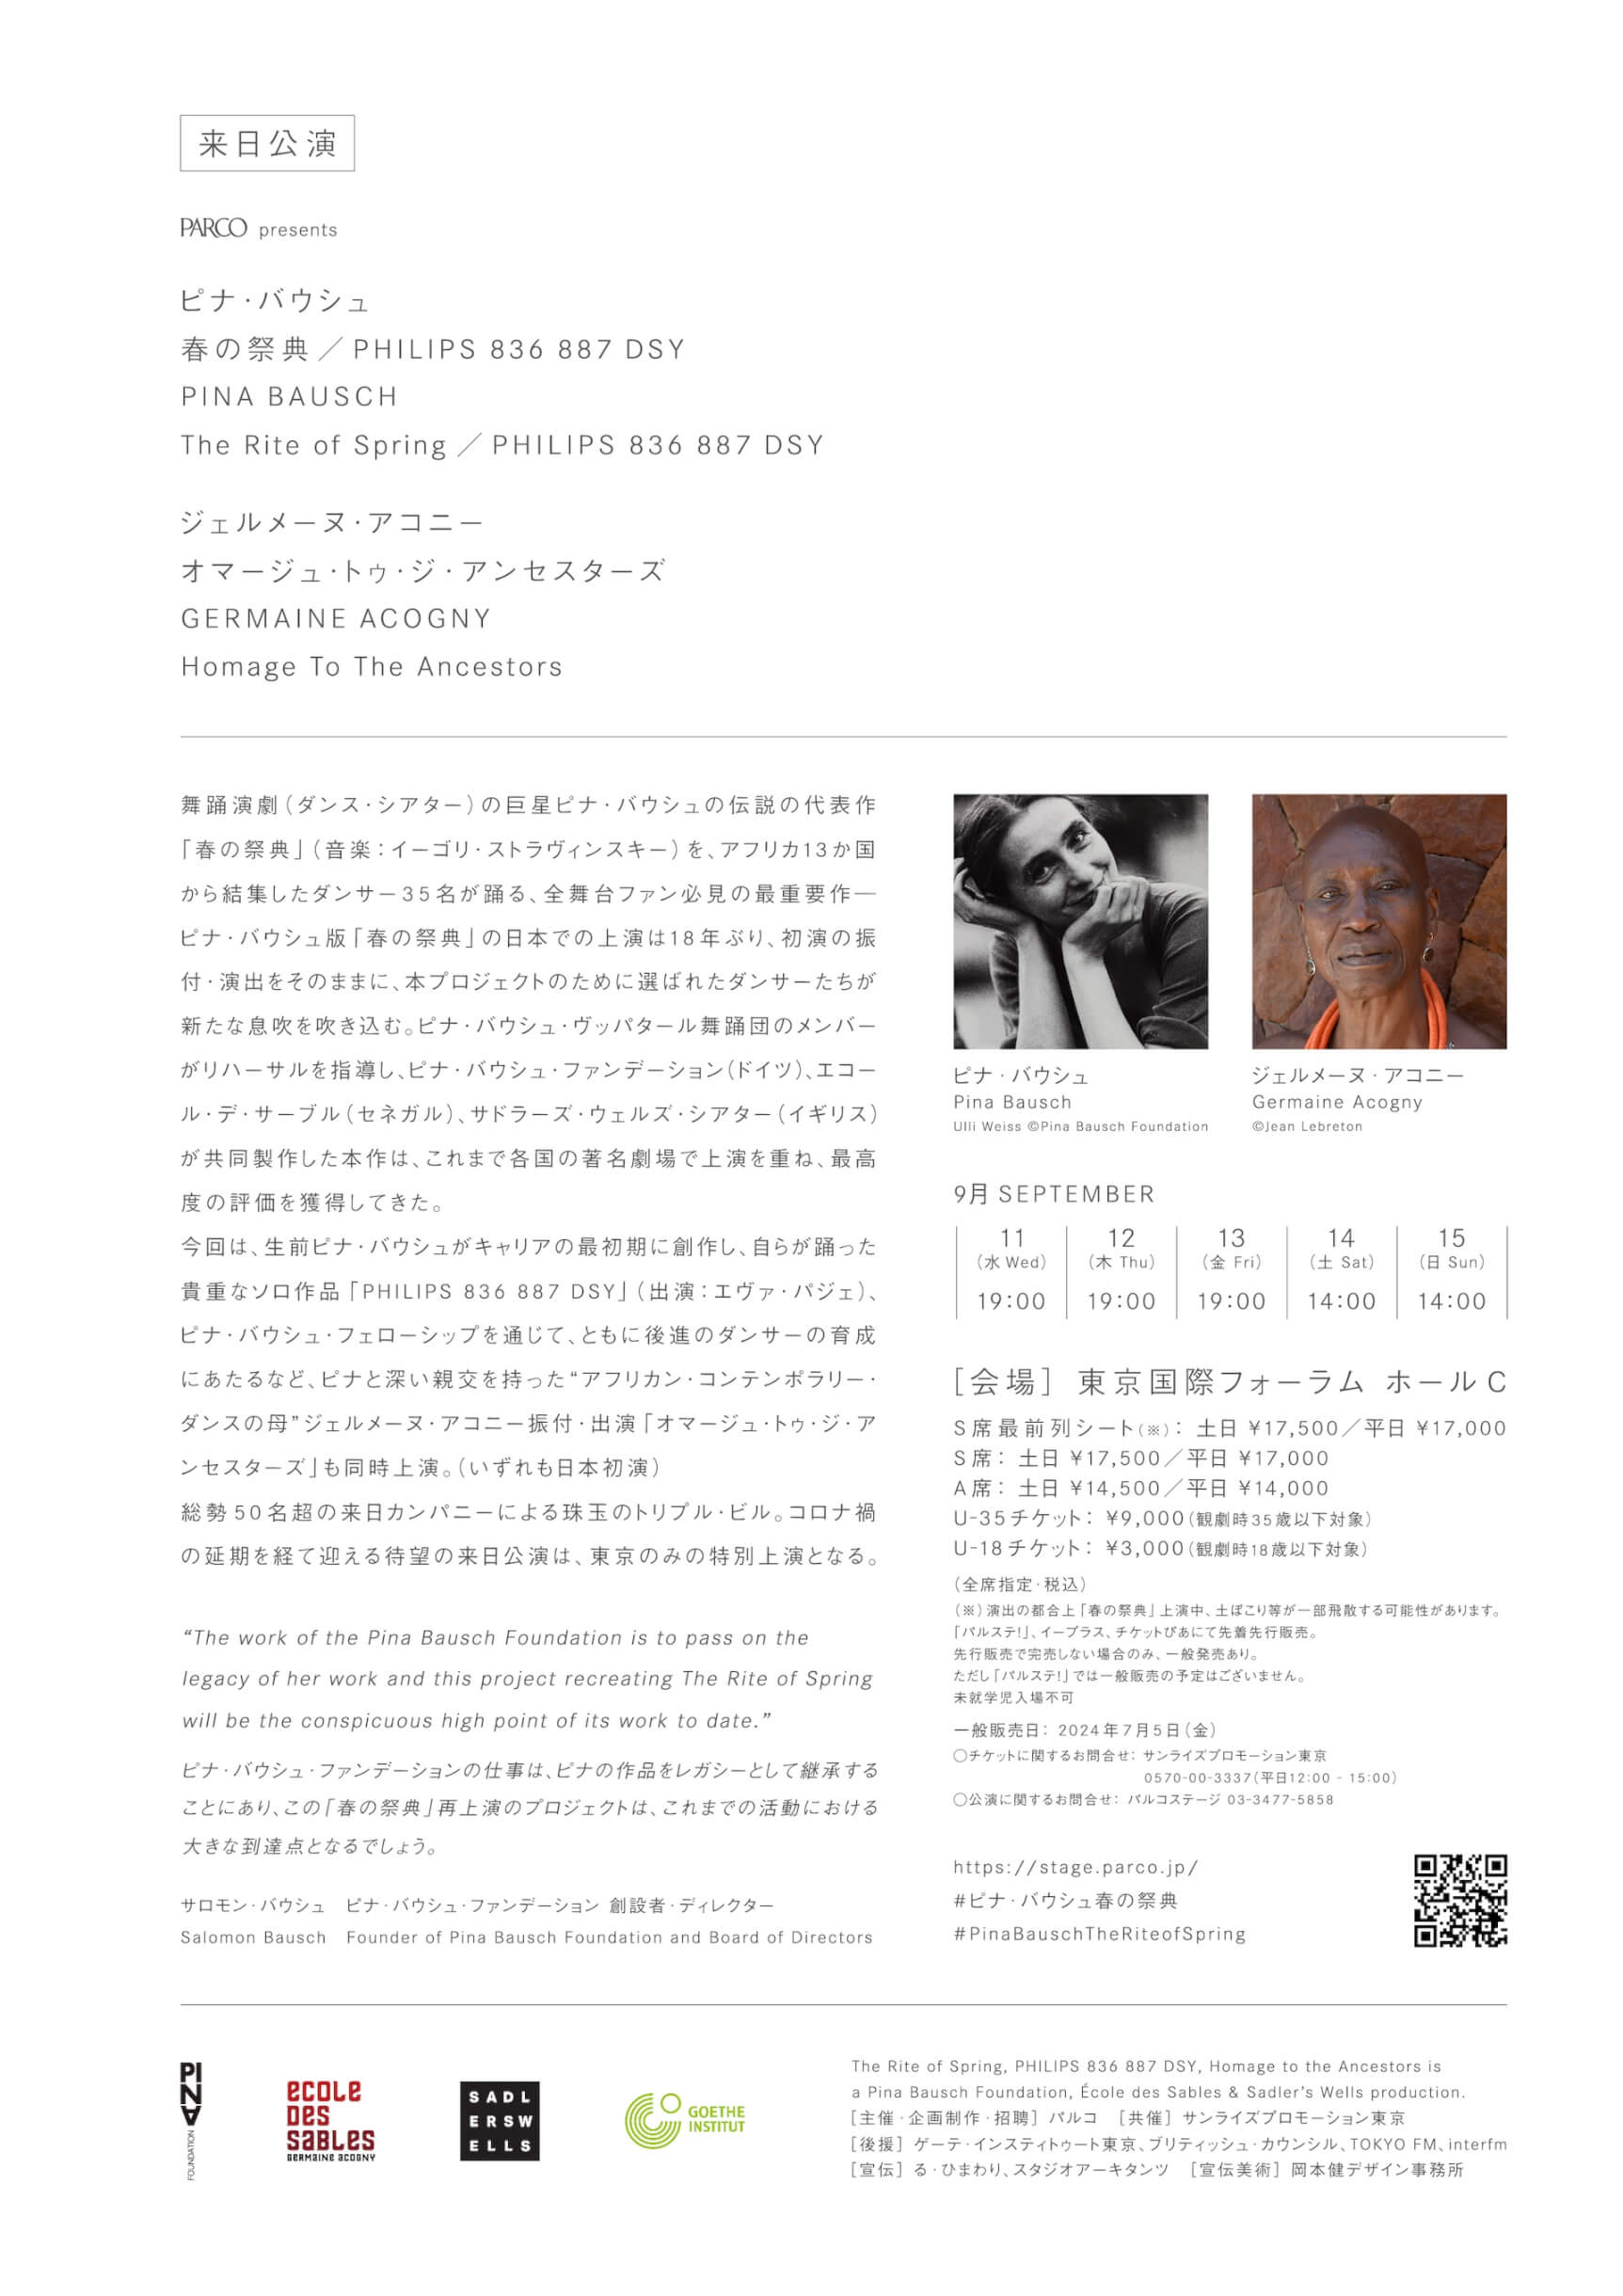 ピナ・バウシュ「春の祭典」が日本で18年ぶりに上演｜同時に「PHILIPS 836 887 DSY」、ジェルメーヌ・アコニー「オマージュ・トゥ・ジ・アンセスターズ」も日本初演 artculture240614-pina-bausch1